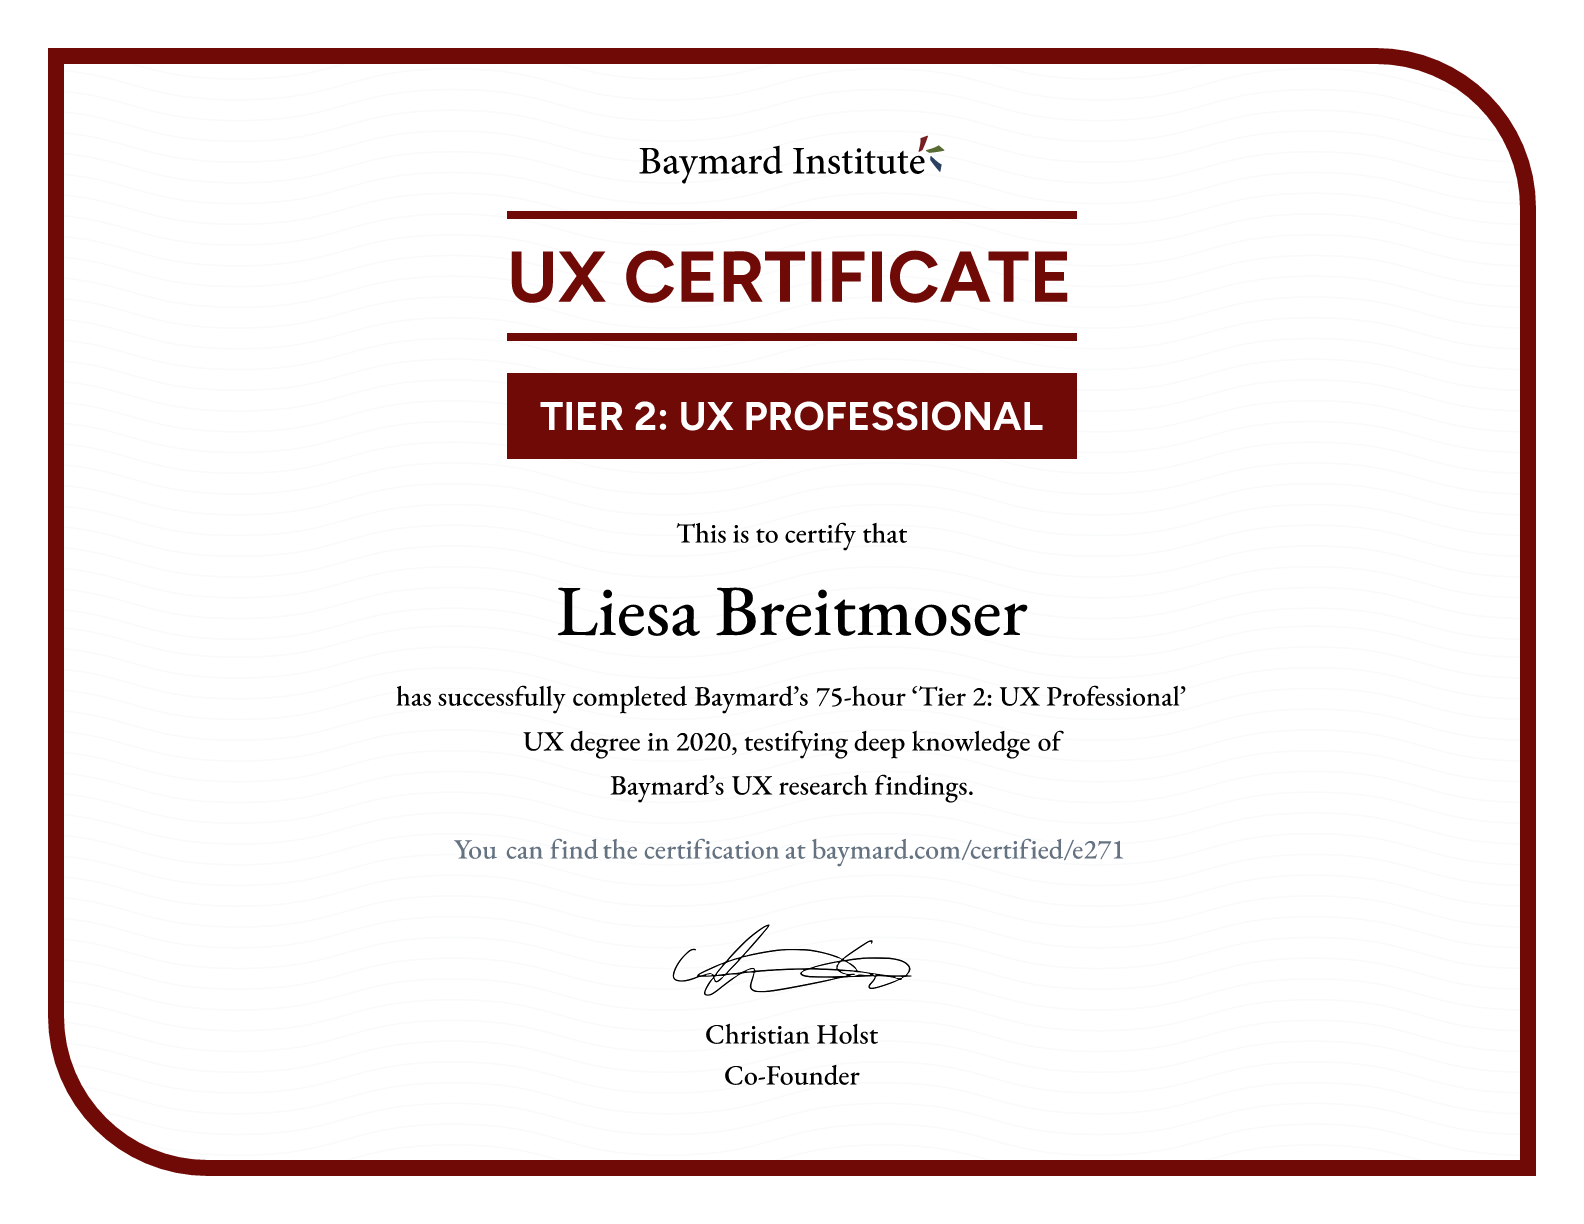 Liesa Breitmoser’s certificate